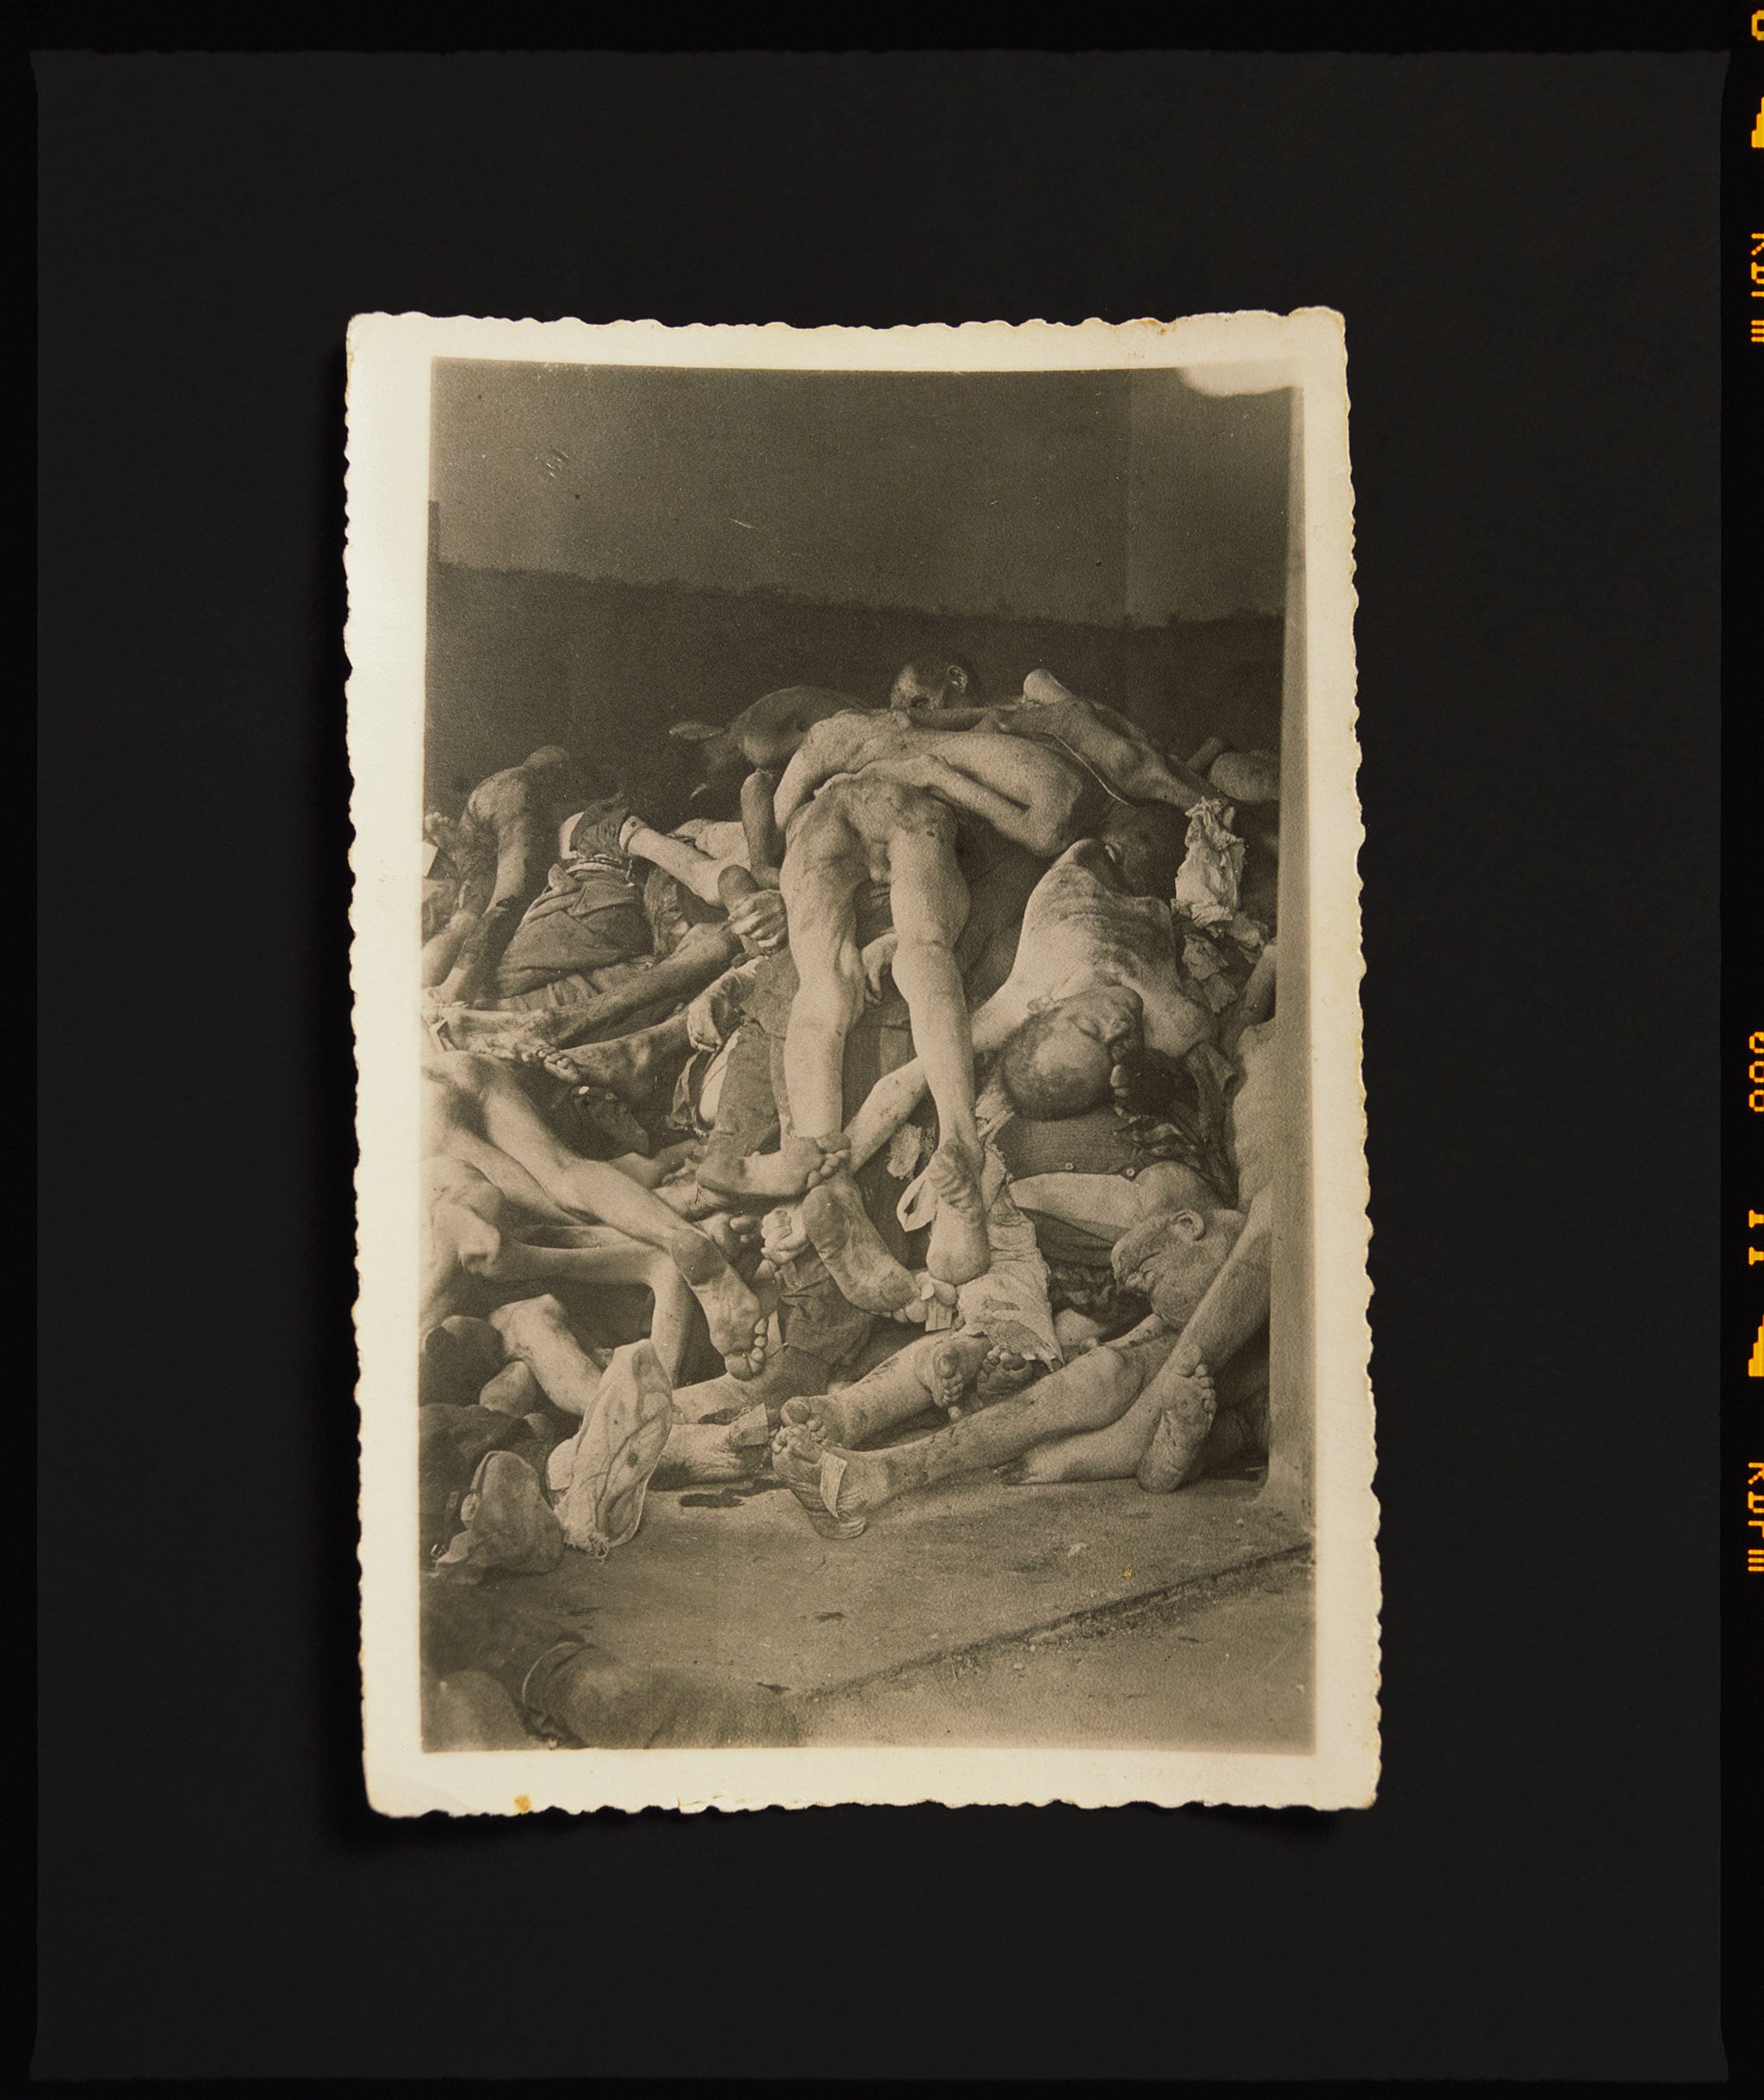 Andres Serrano, "Deathcamp", 2020. Dall'Archivio: Stampa a pigmenti 50 x 60 pollici